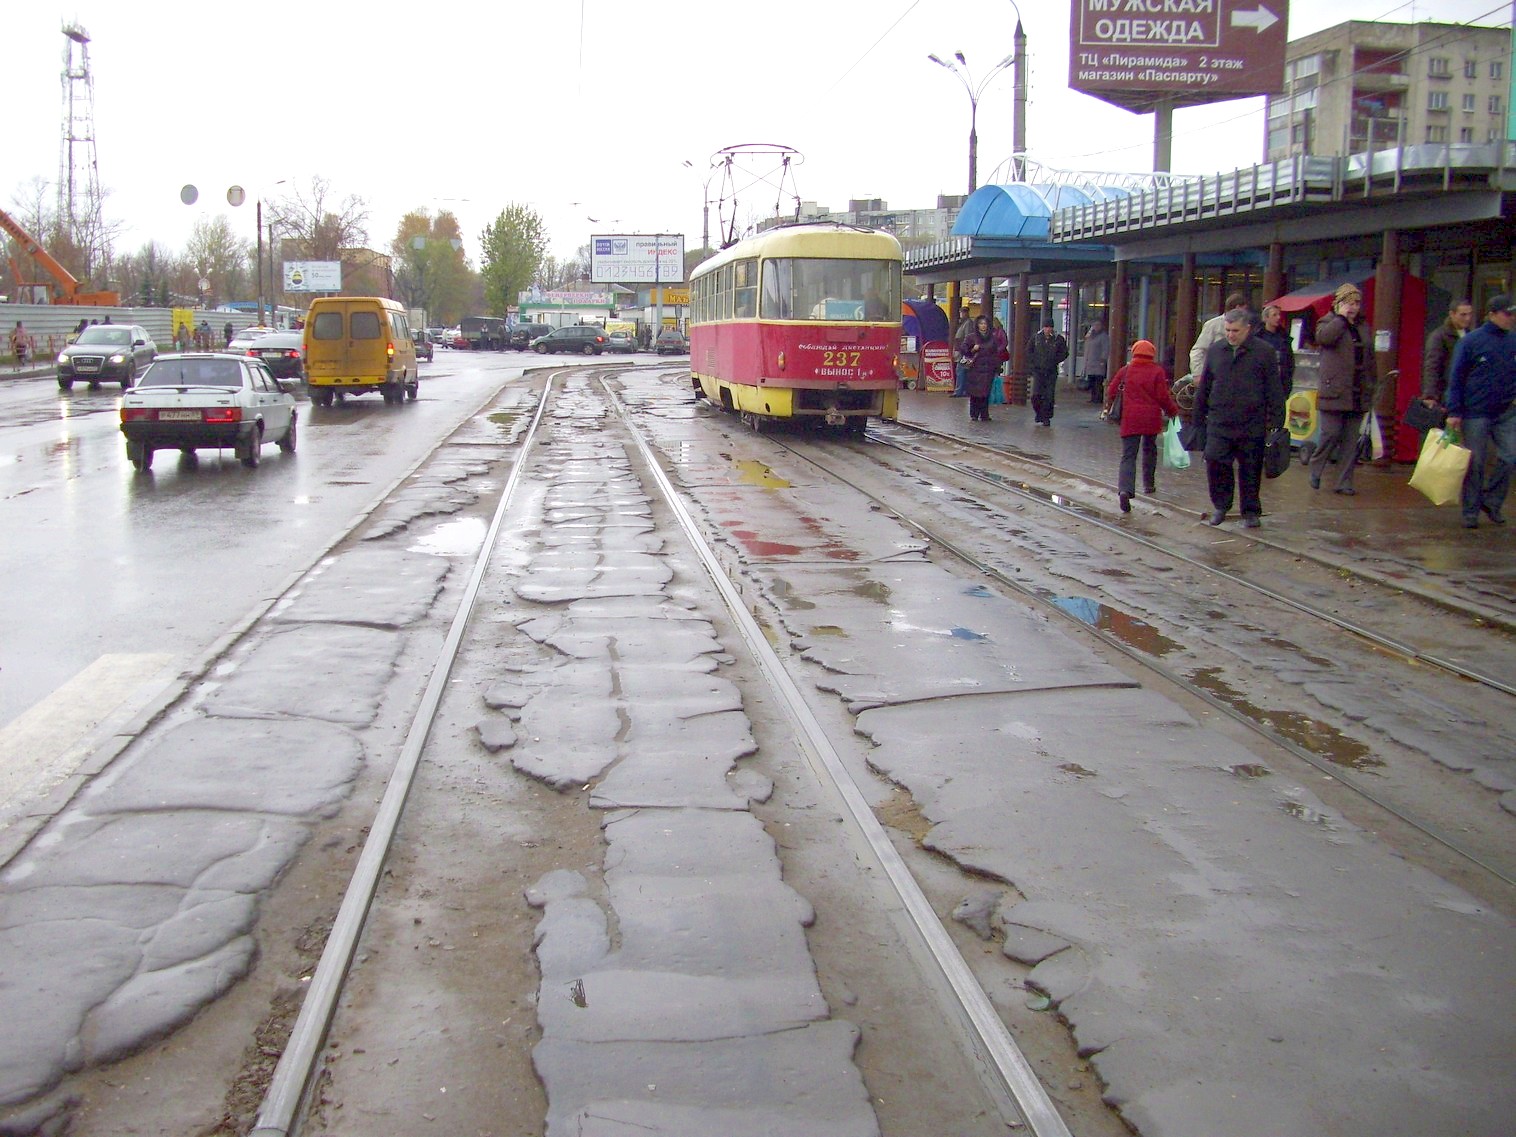 Тверской трамвай  —  фотографии, сделанные в 2010 году (часть  3)